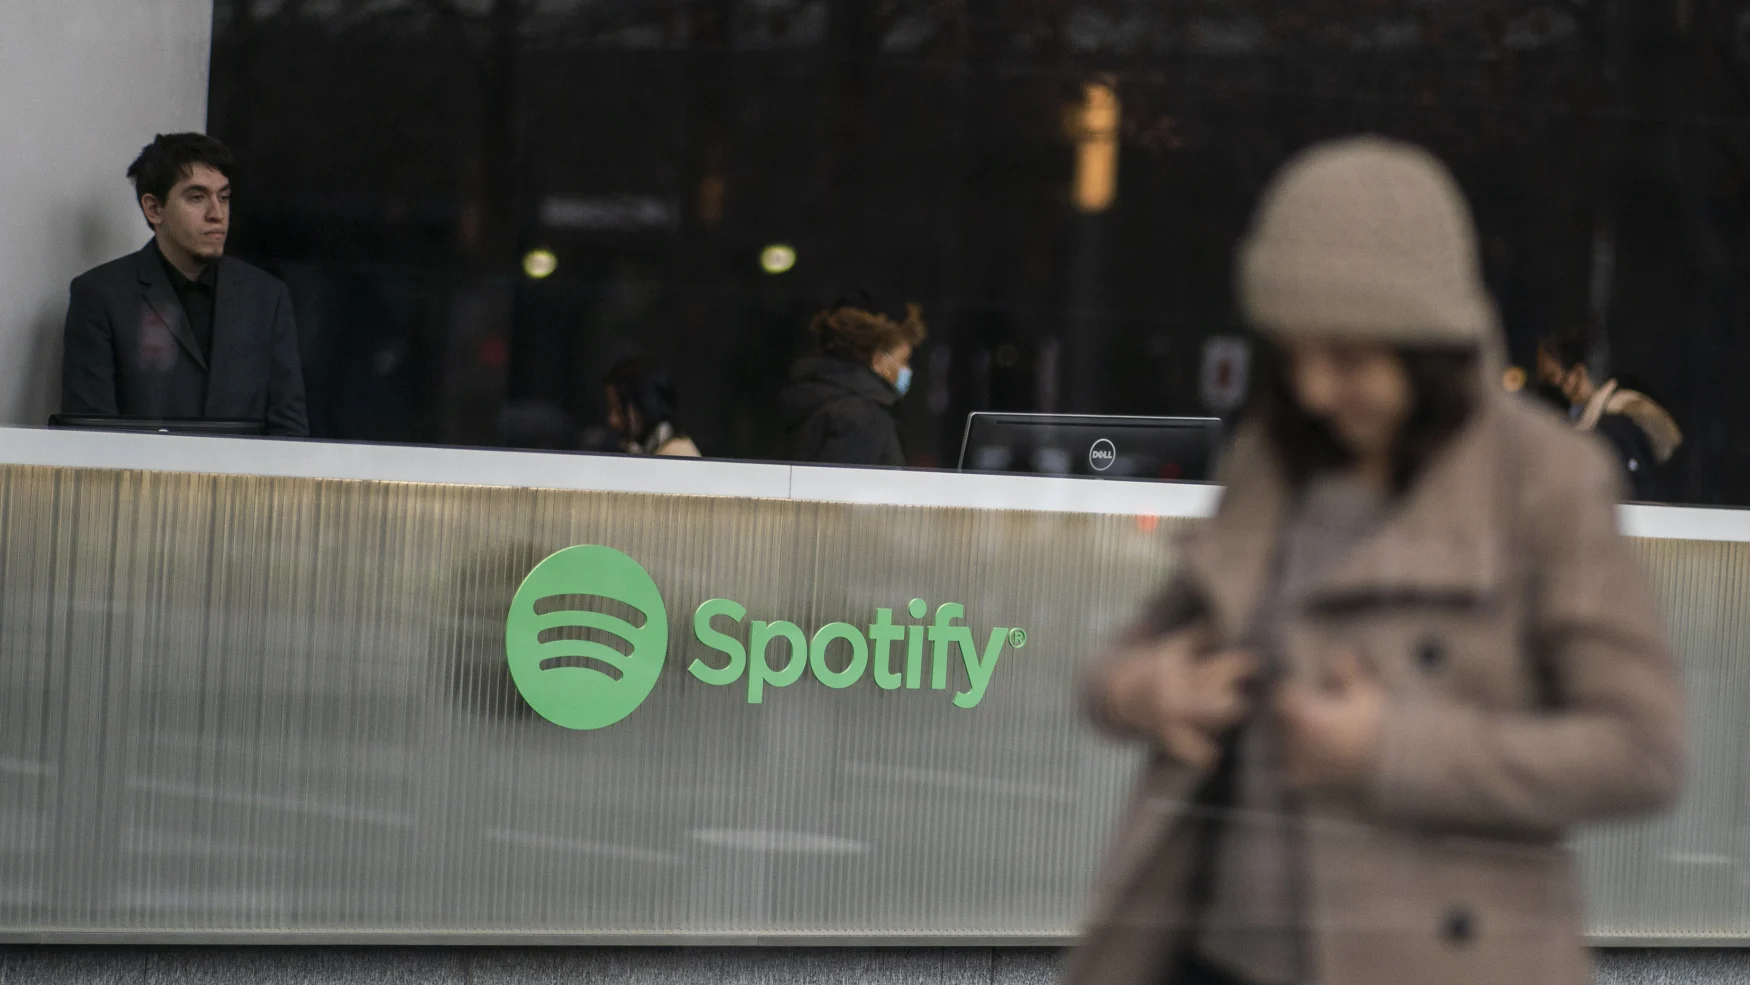 NEW YORK, NY - JANUARY 23: Orang-orang terlihat di dalam gedung markas Spotify di Manhattan pada 23 Januari 2023 di New York City.  Spotify mengumumkan pada hari Senin bahwa mereka akan memangkas 6% dari tenaga kerja globalnya.  (Foto oleh Eduardo Munoz Alvarez/VIEWpress via Getty Images)